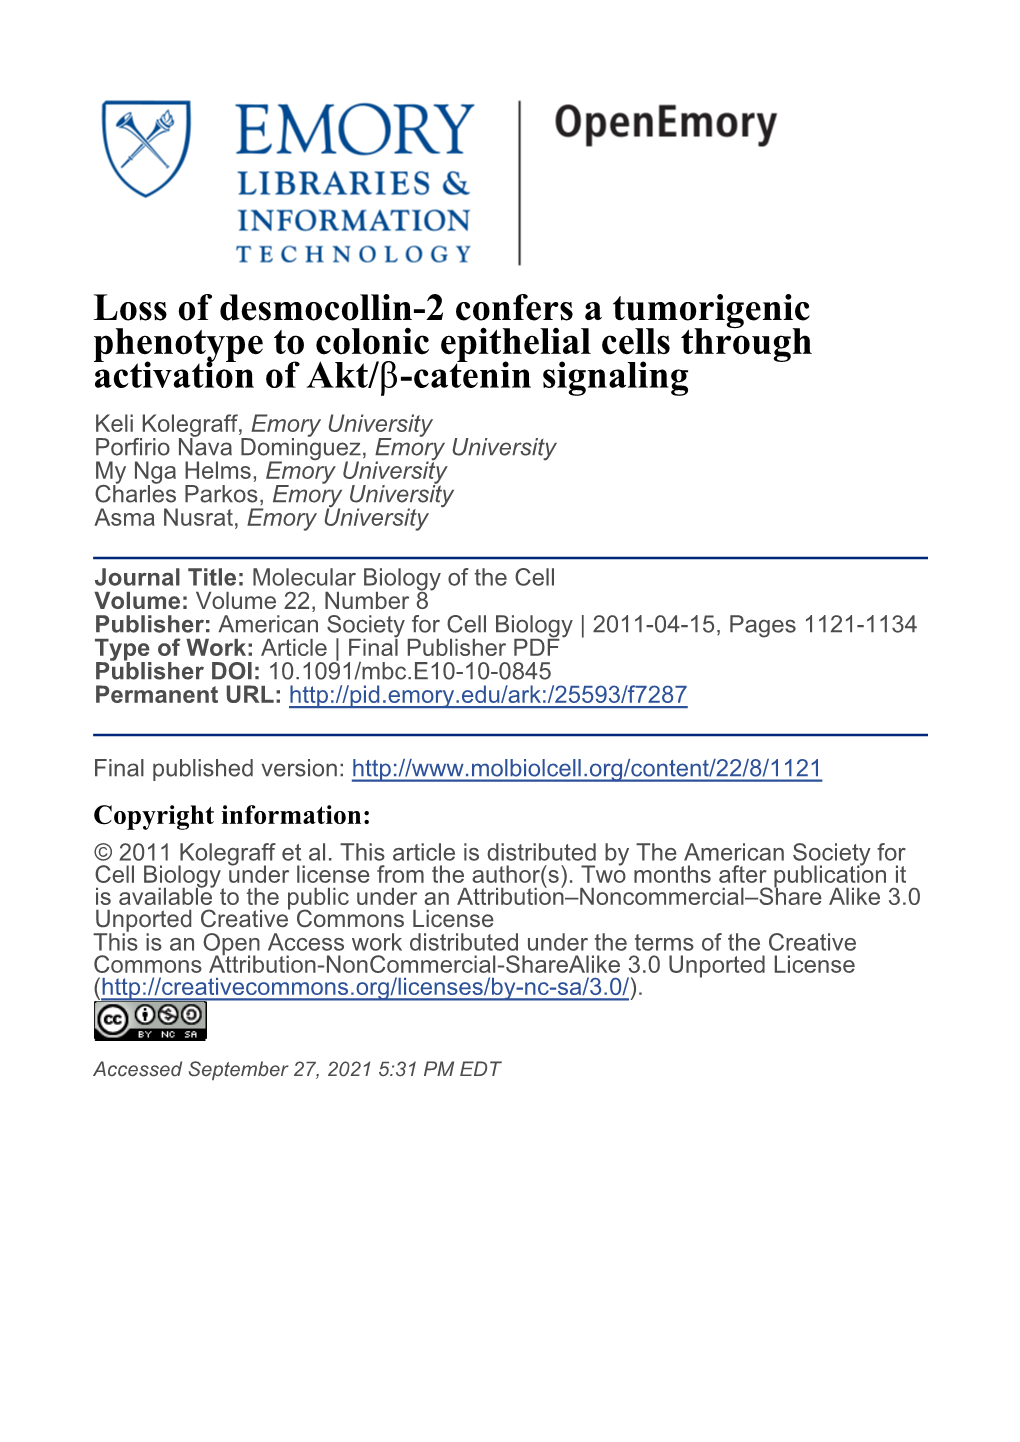 Loss of Desmocollin-2 Confers a Tumorigenic